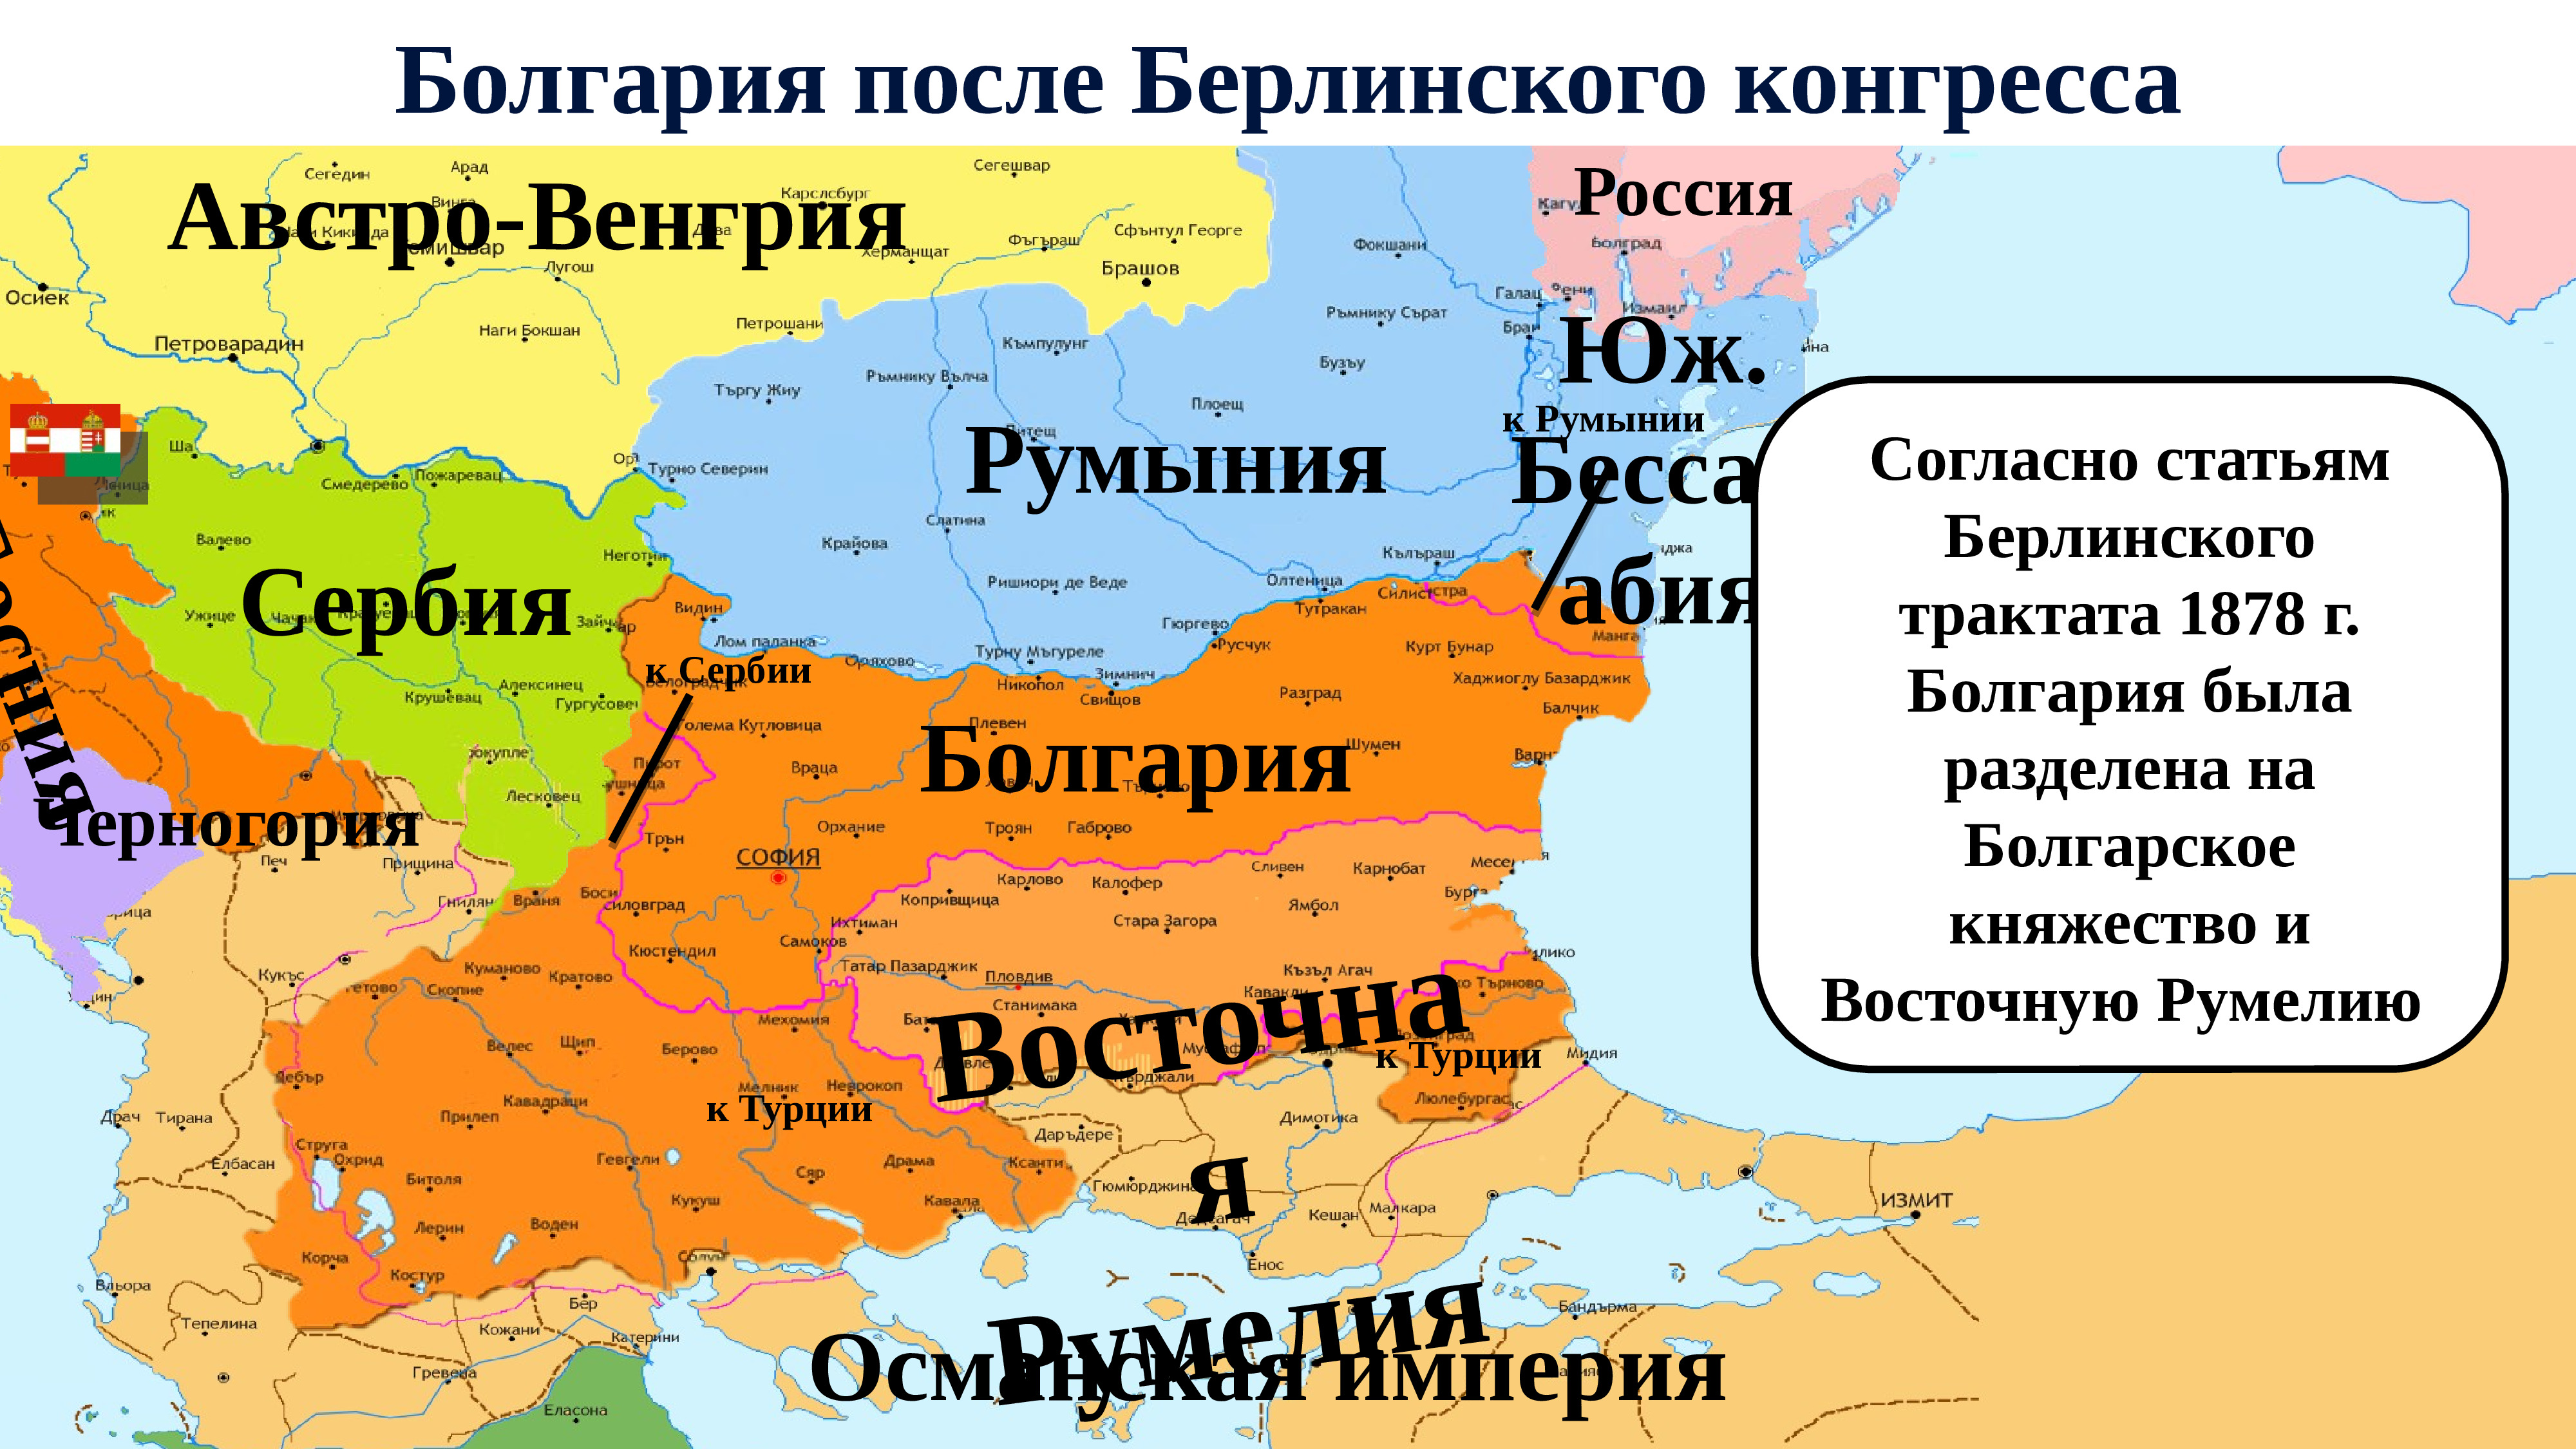 Болгария и Восточная Румелия в 1878